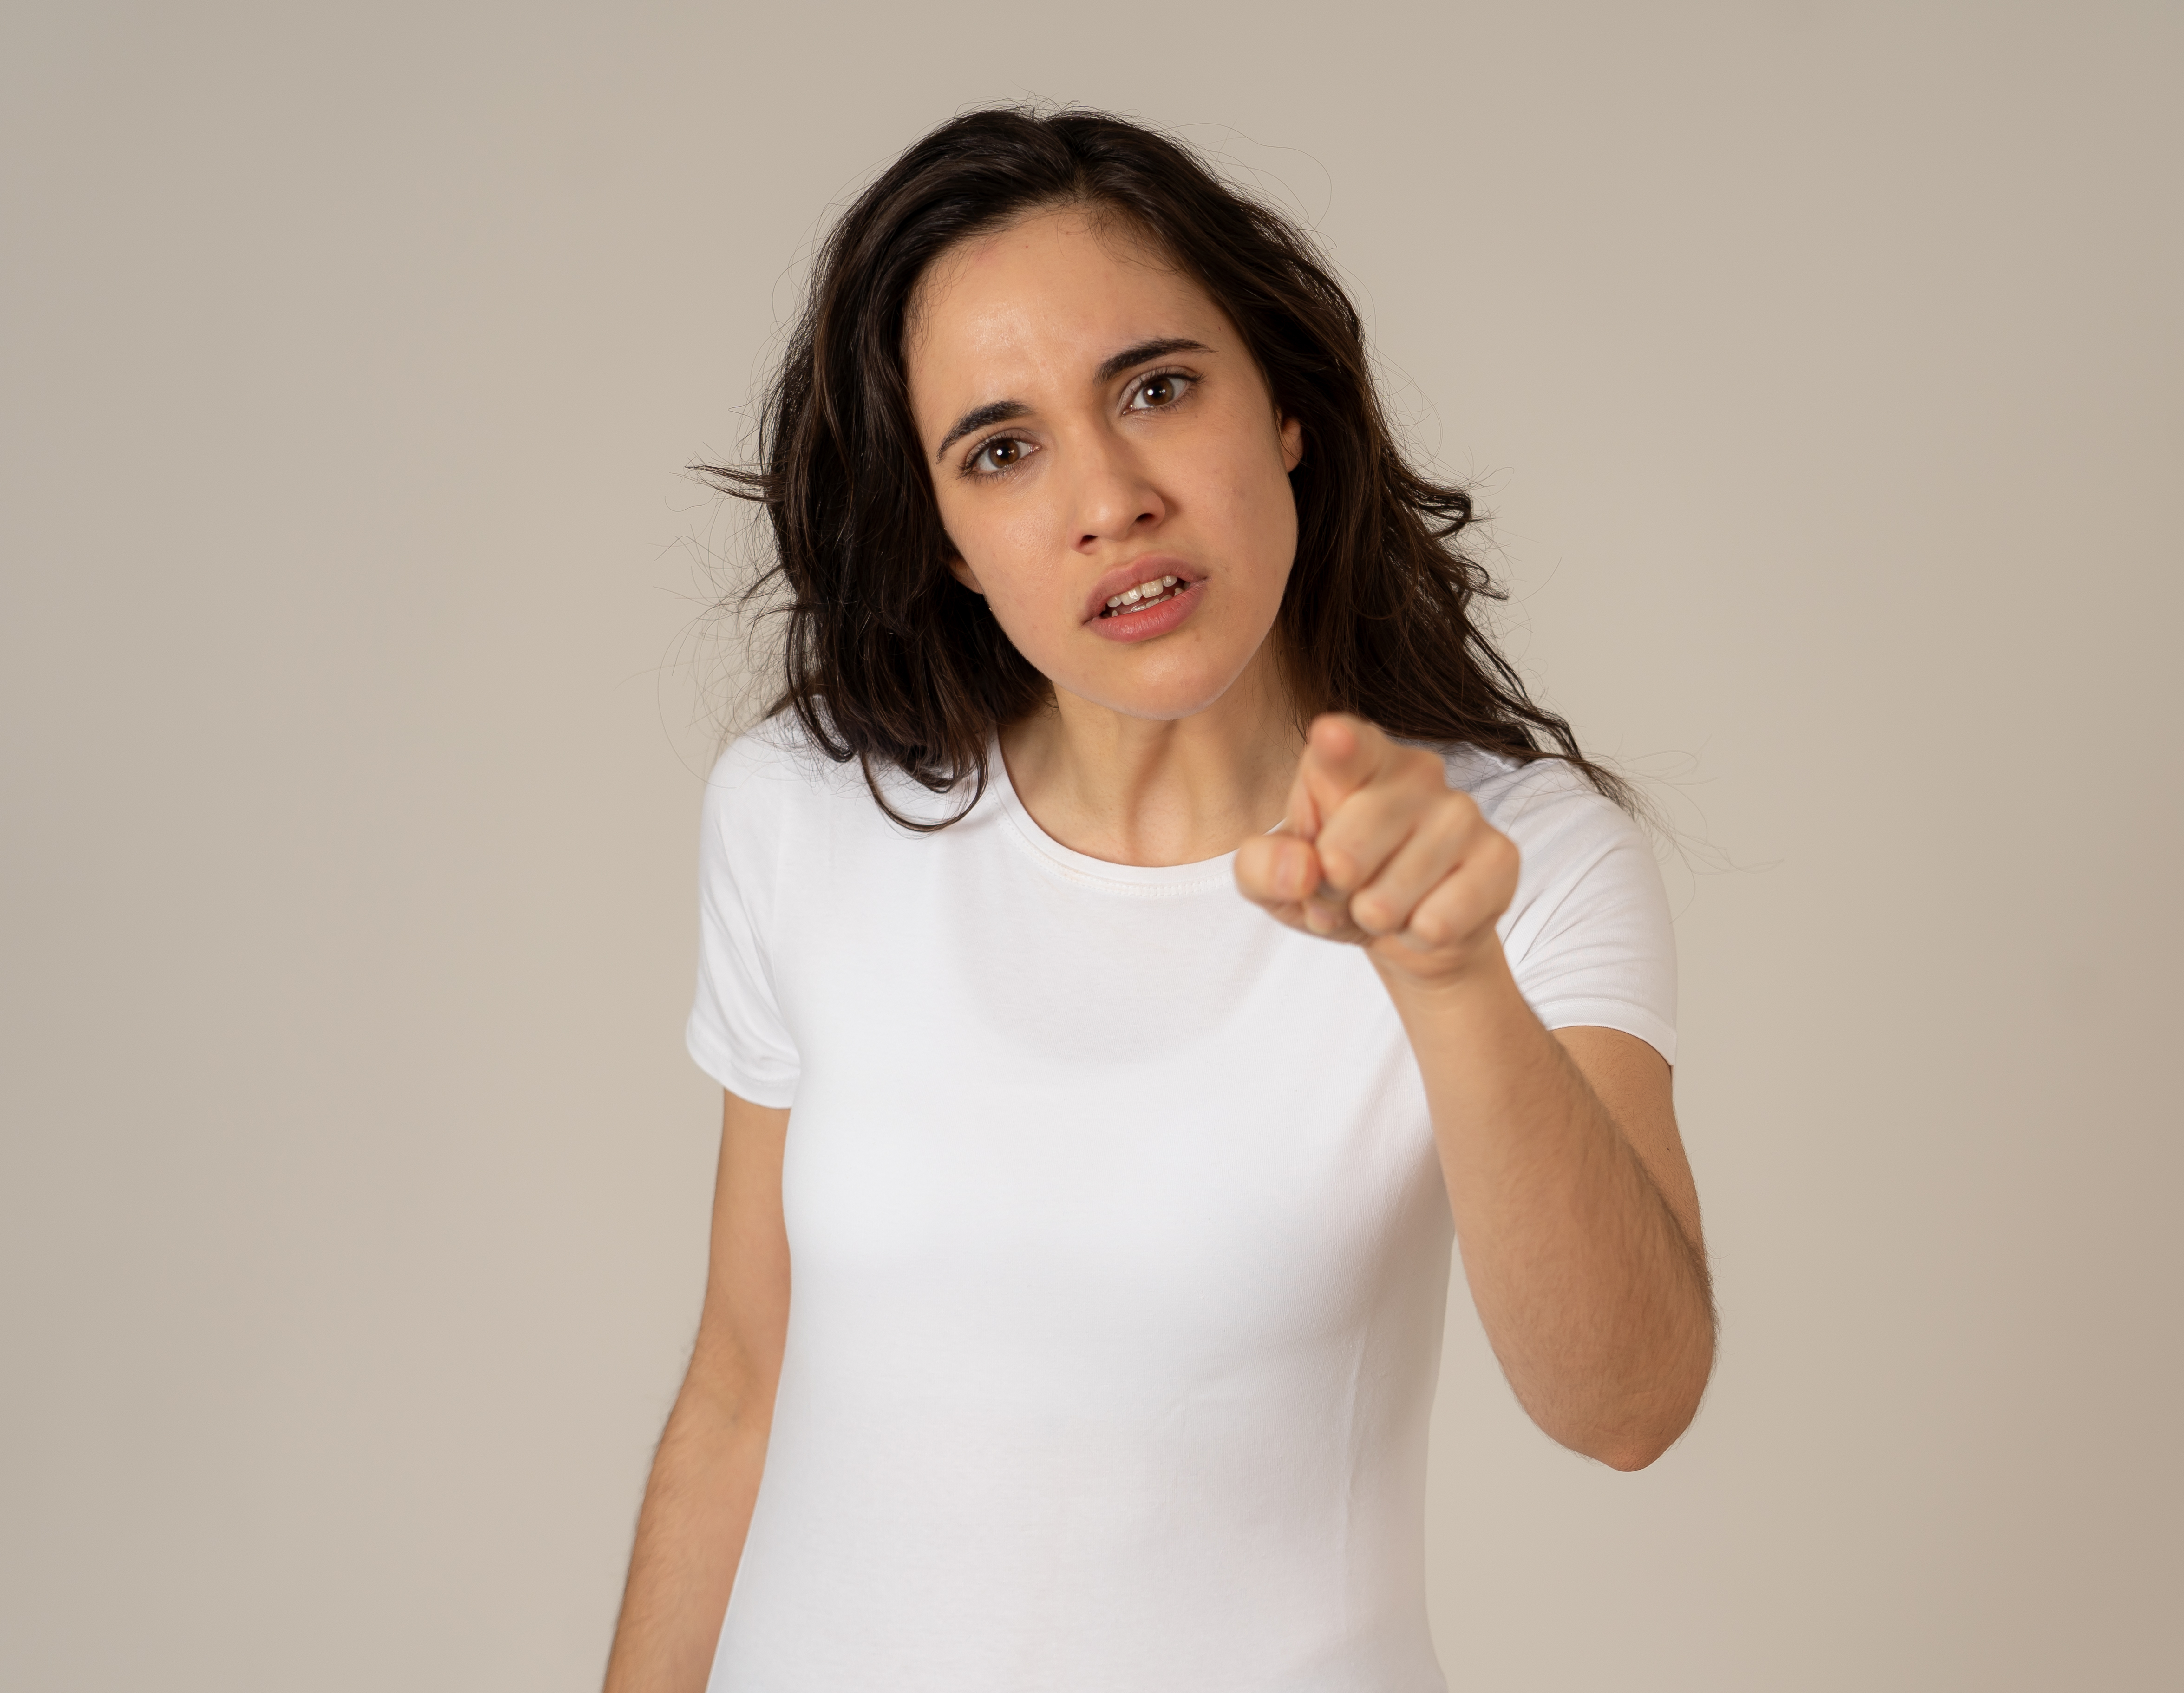 Eine wütende Frau, die anklagend mit dem Finger zeigt | Quelle: Shutterstock